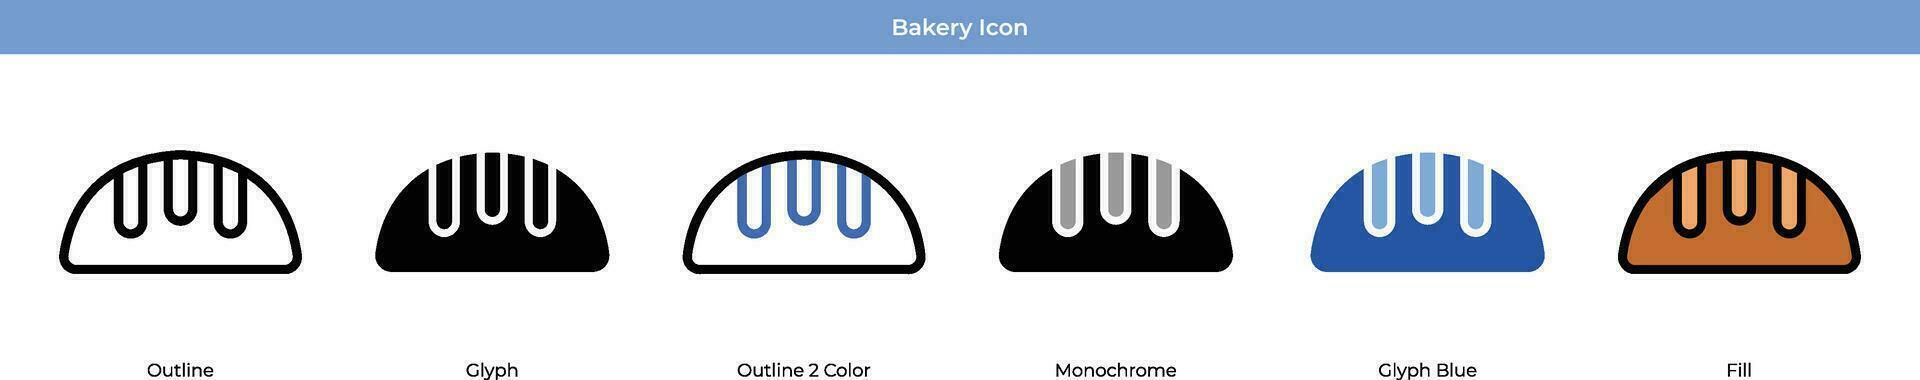 bageri ikonuppsättning vektor